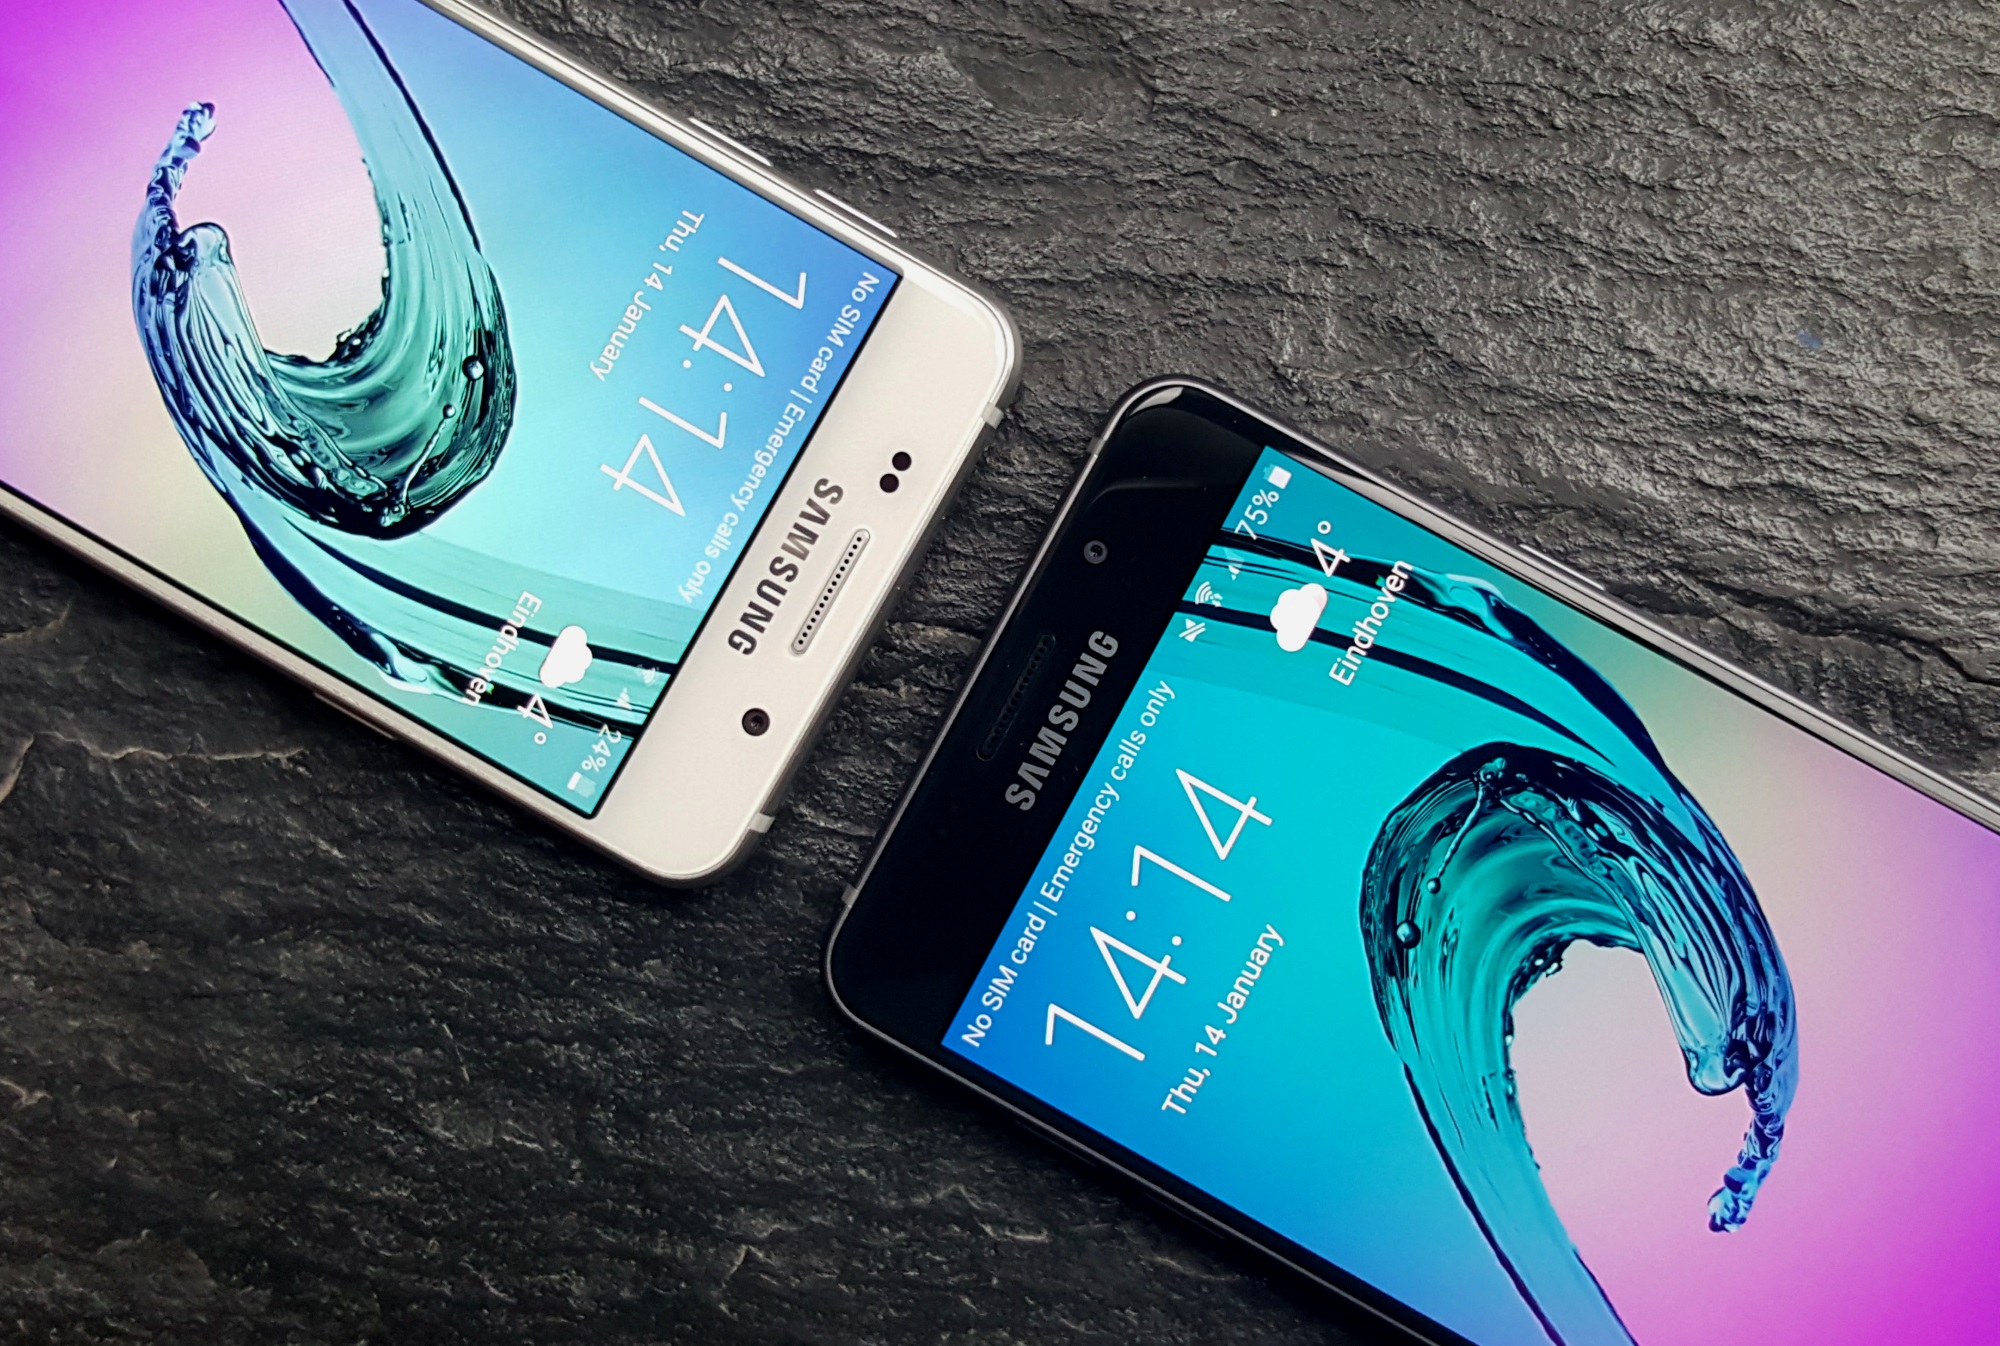 Samsung Galaxy A3 8